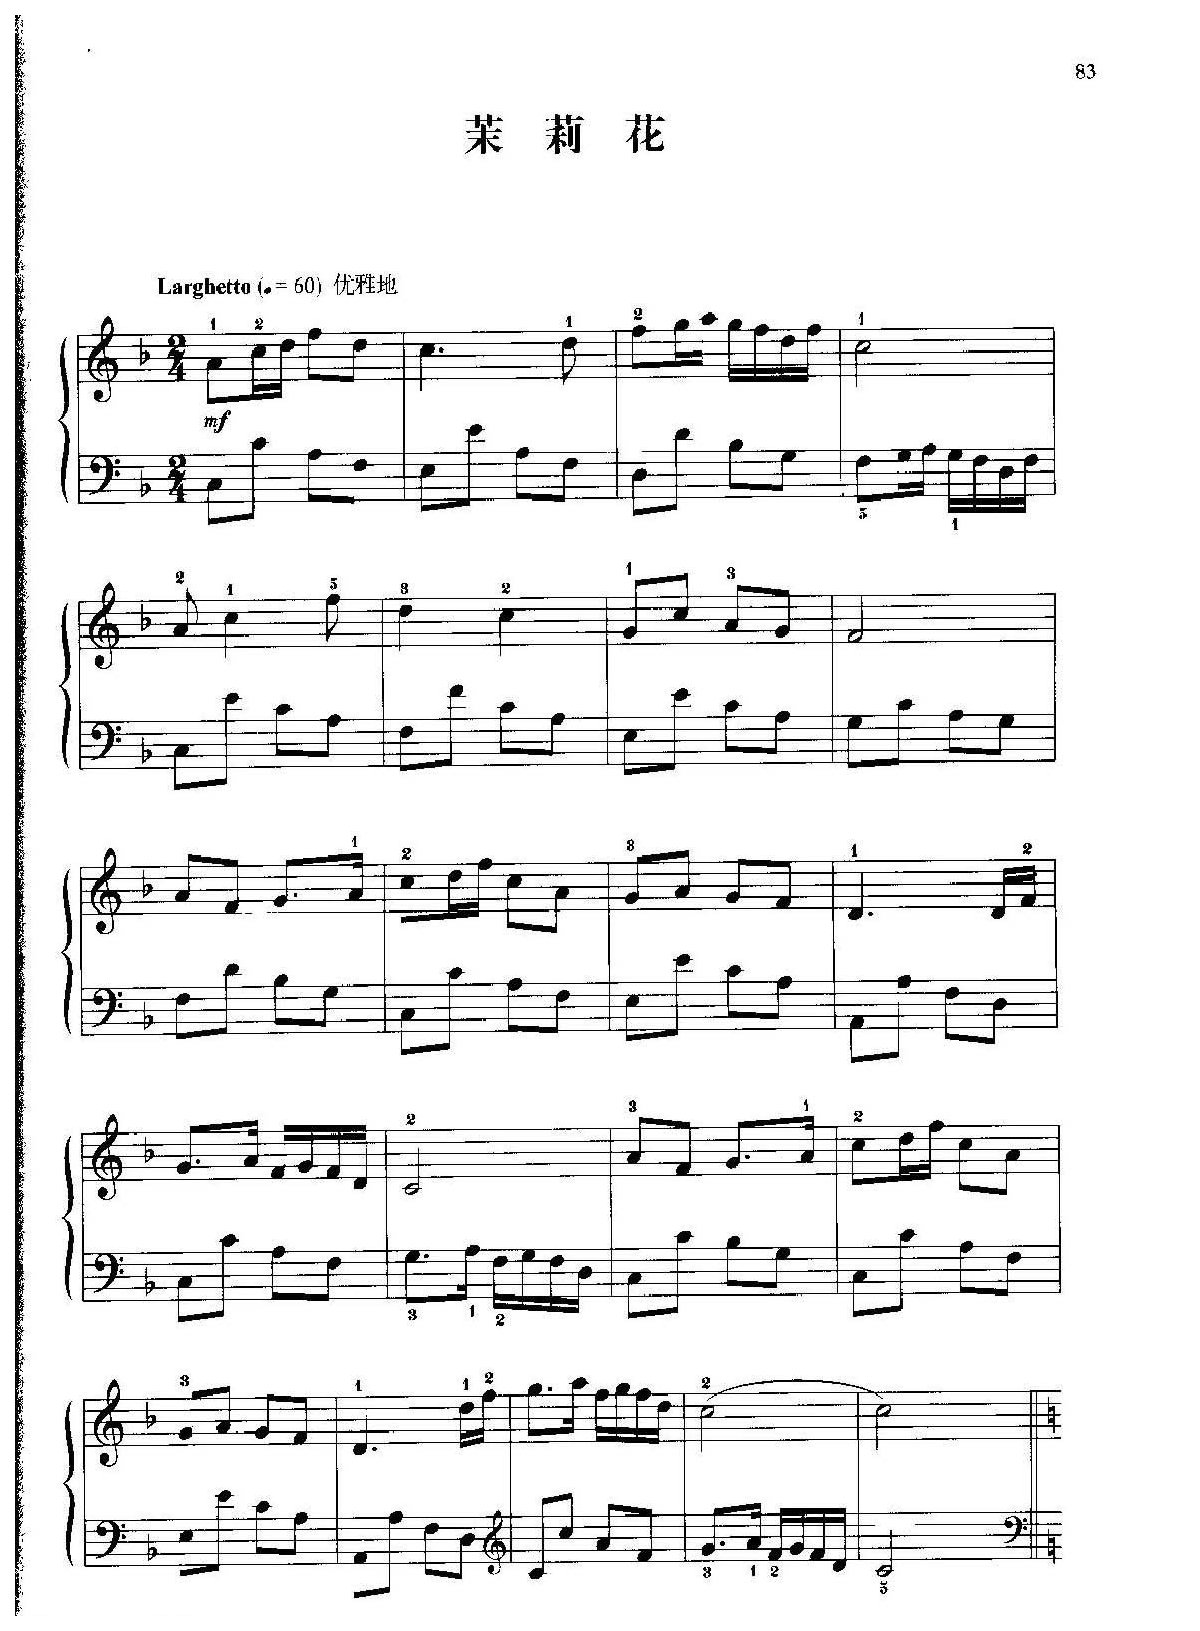 中国民歌钢琴小曲《茉莉花》